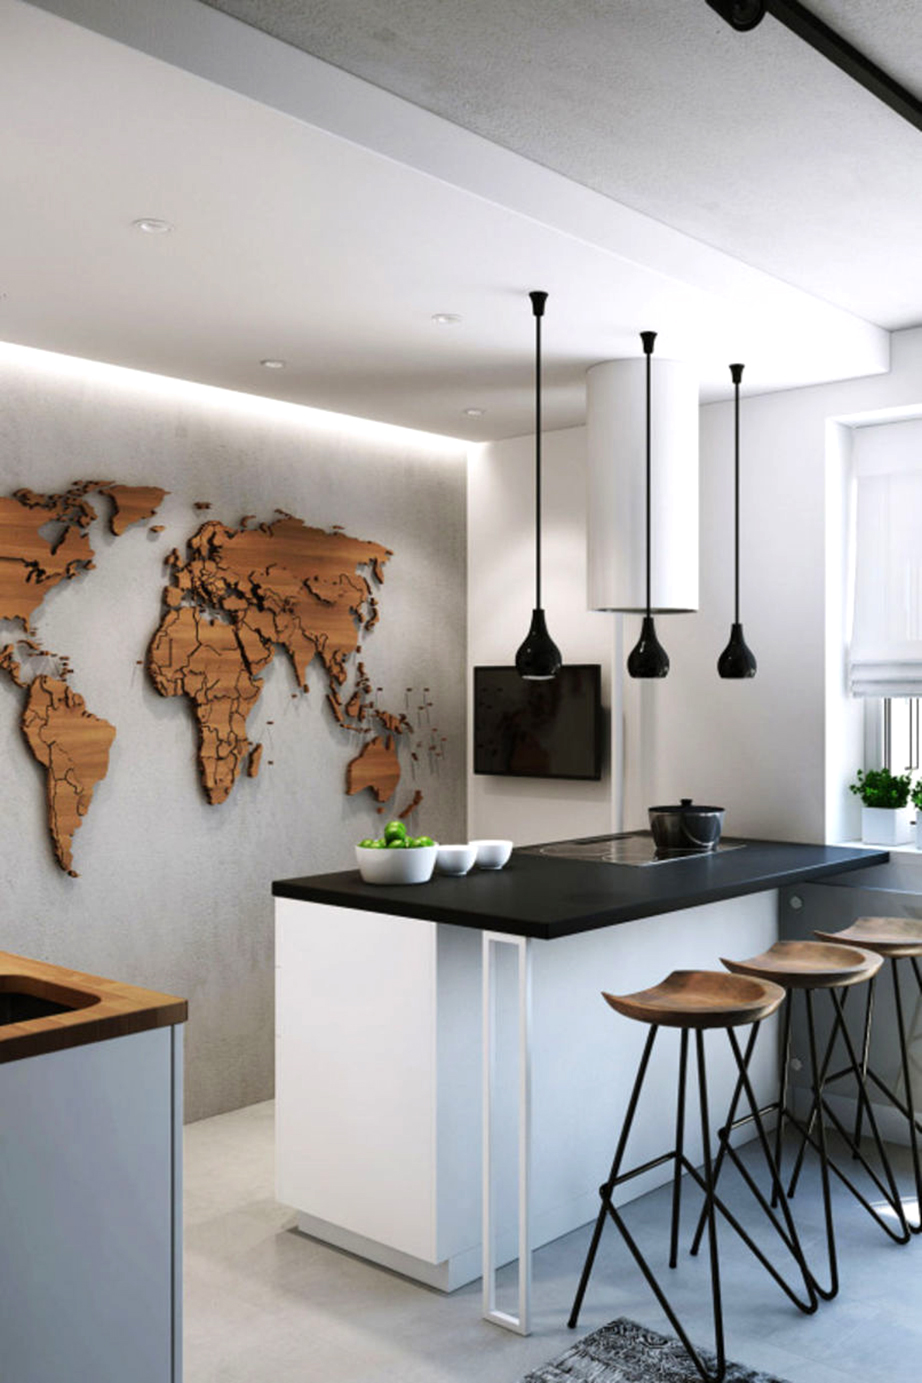 Σε μια μοντέρνα κουζίνα μια ανεξάρτητη κατασκευή του παγκόσμιου χάρτη από ξύλο μπορεί να κοσμεί με εξαιρετικό τρόπο τον τοίχο αυτής.